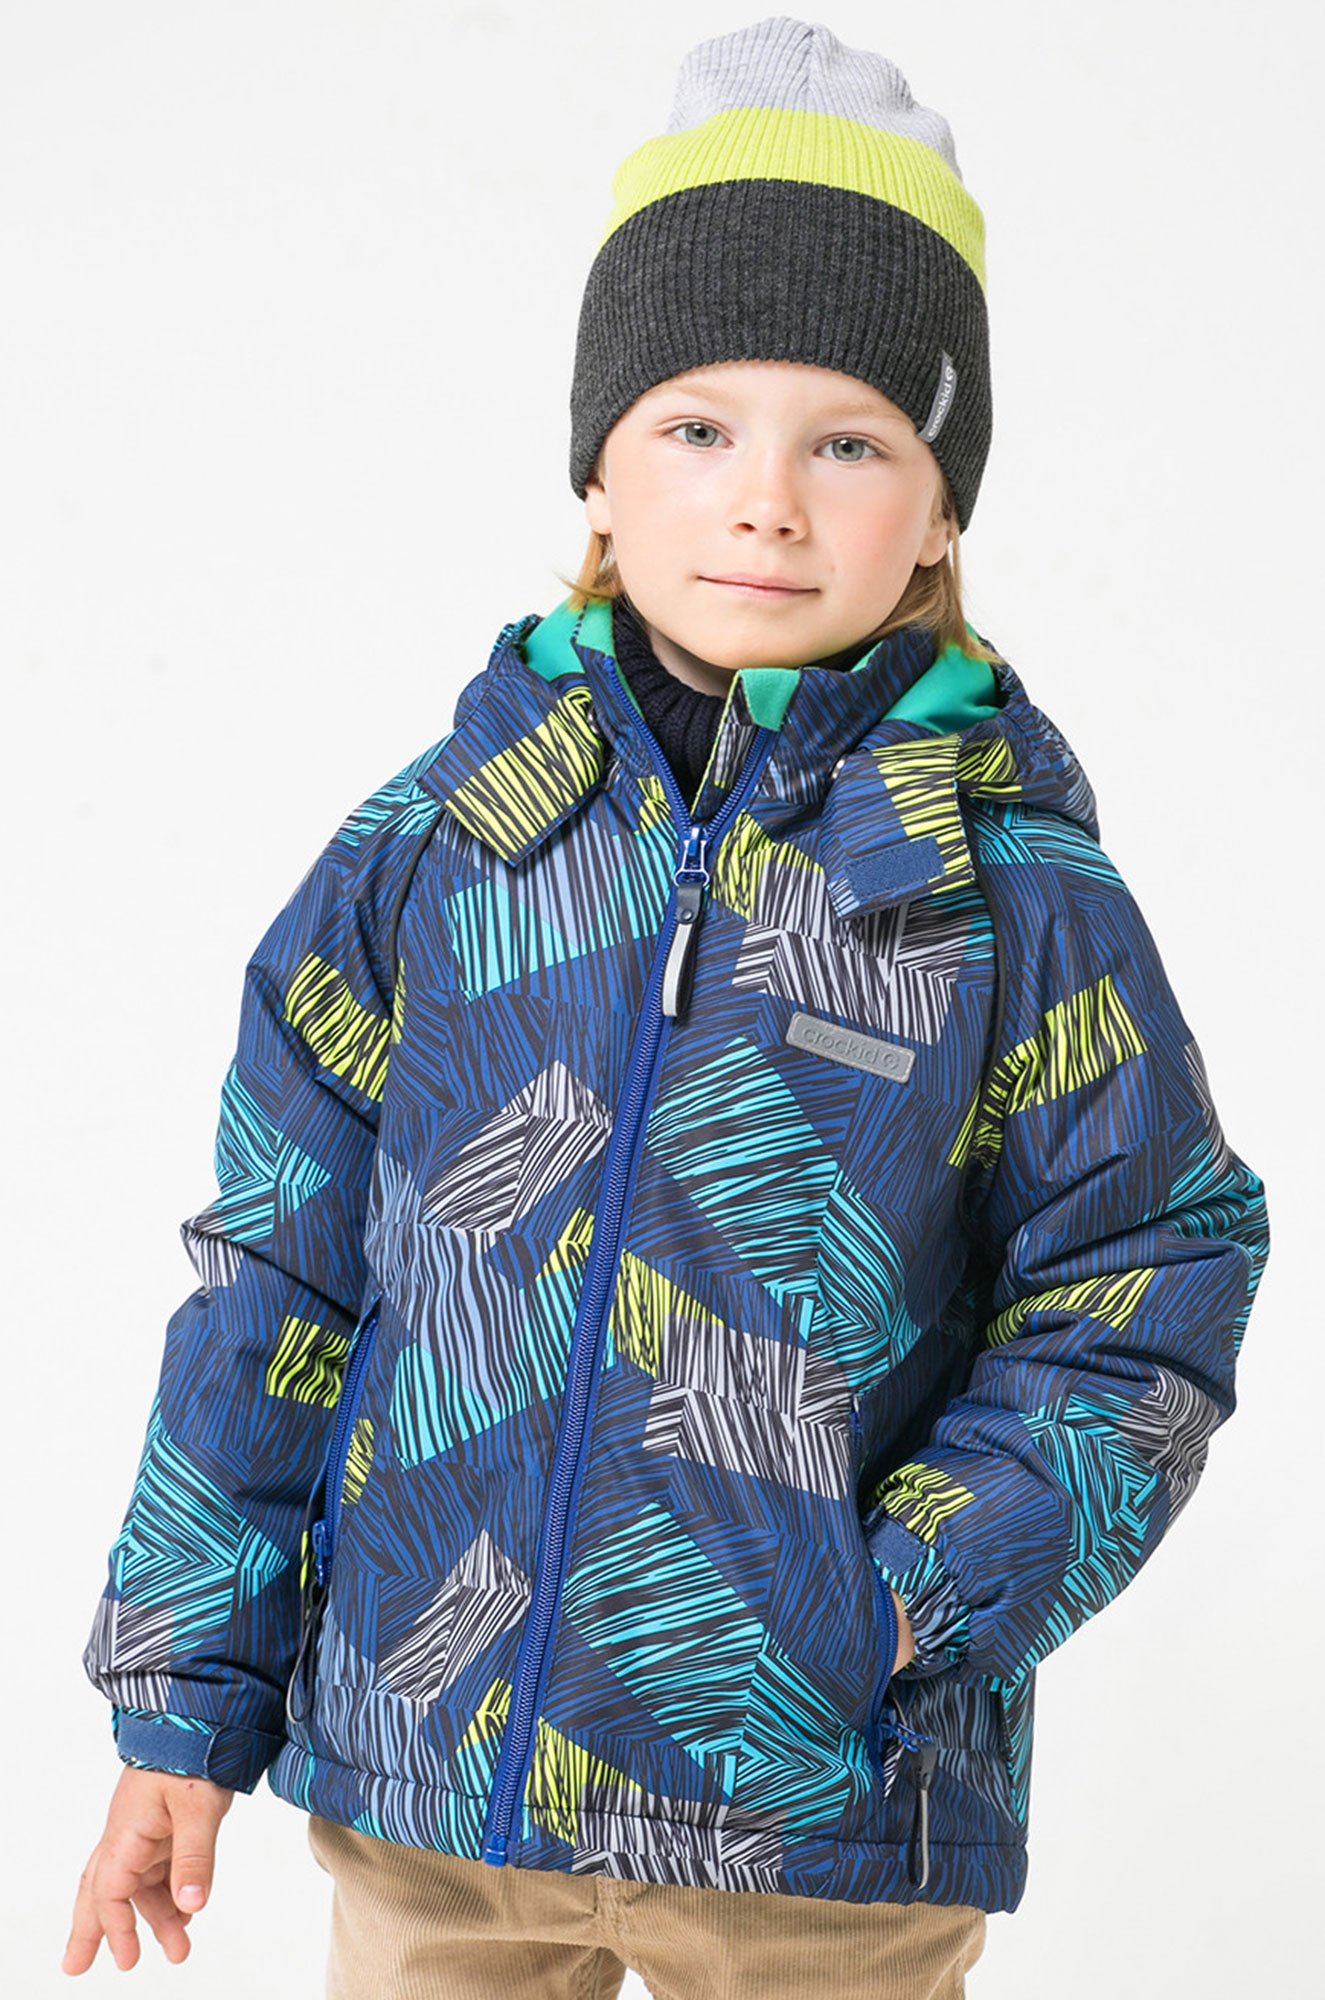 Куртка крокид для мальчика. Куртка Крокид для мальчика зима. Зимняя куртка Крокид на мальчика 2022. Куртка Crockid для мальчика зима. Crockid куртка для мальчика зимняя.